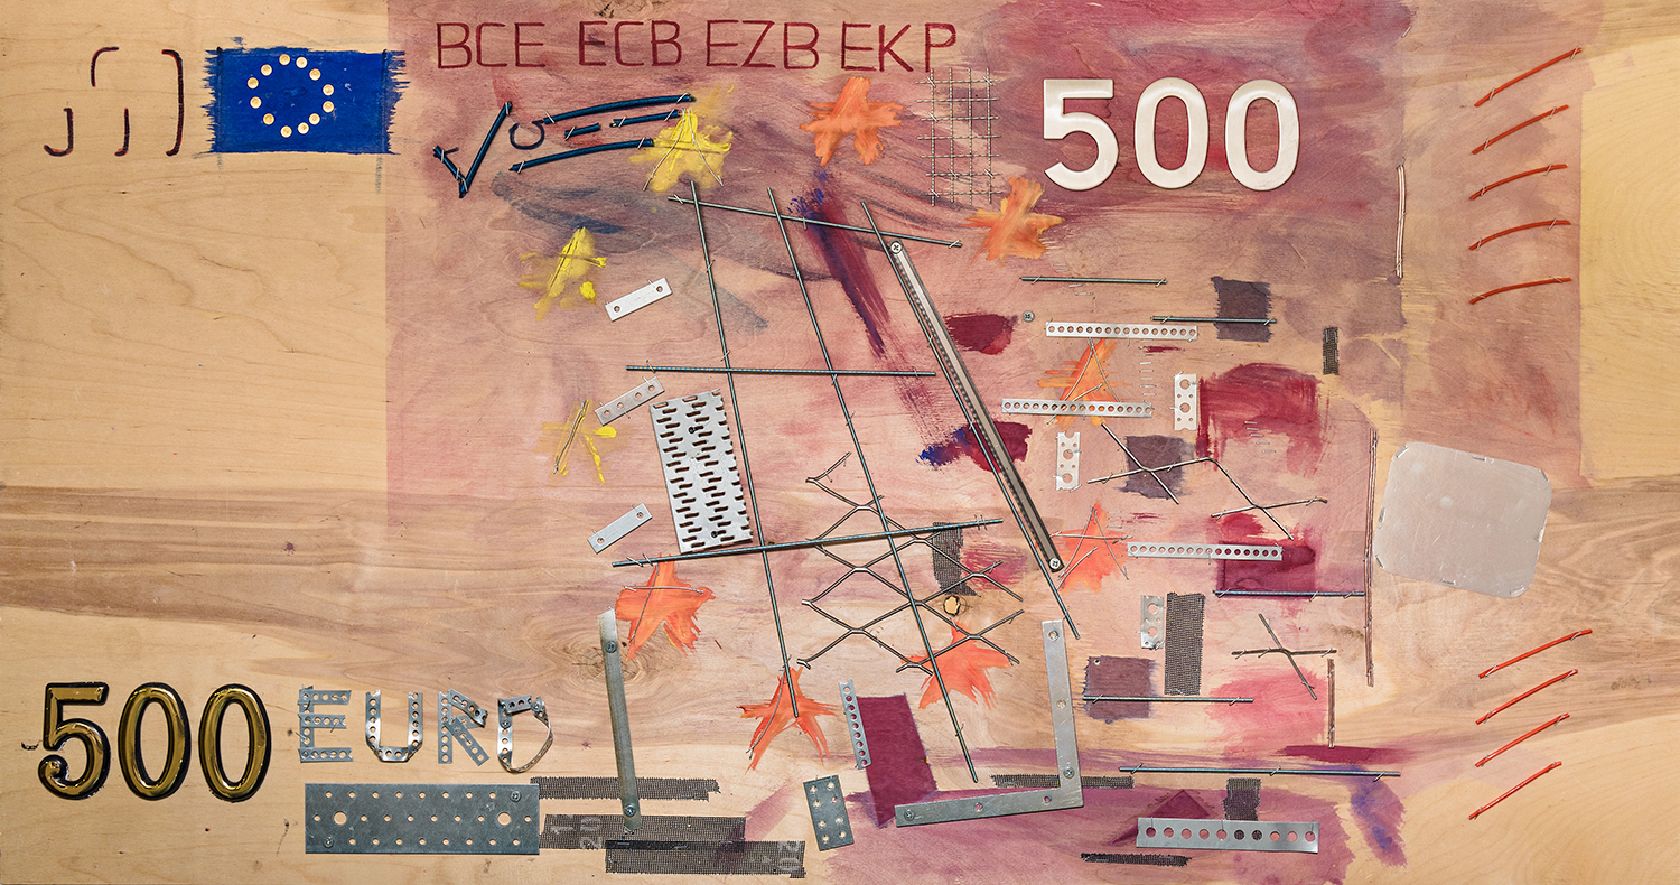 Пётр Быстров (Объект - 
                  143 x 76 см) 500 евро